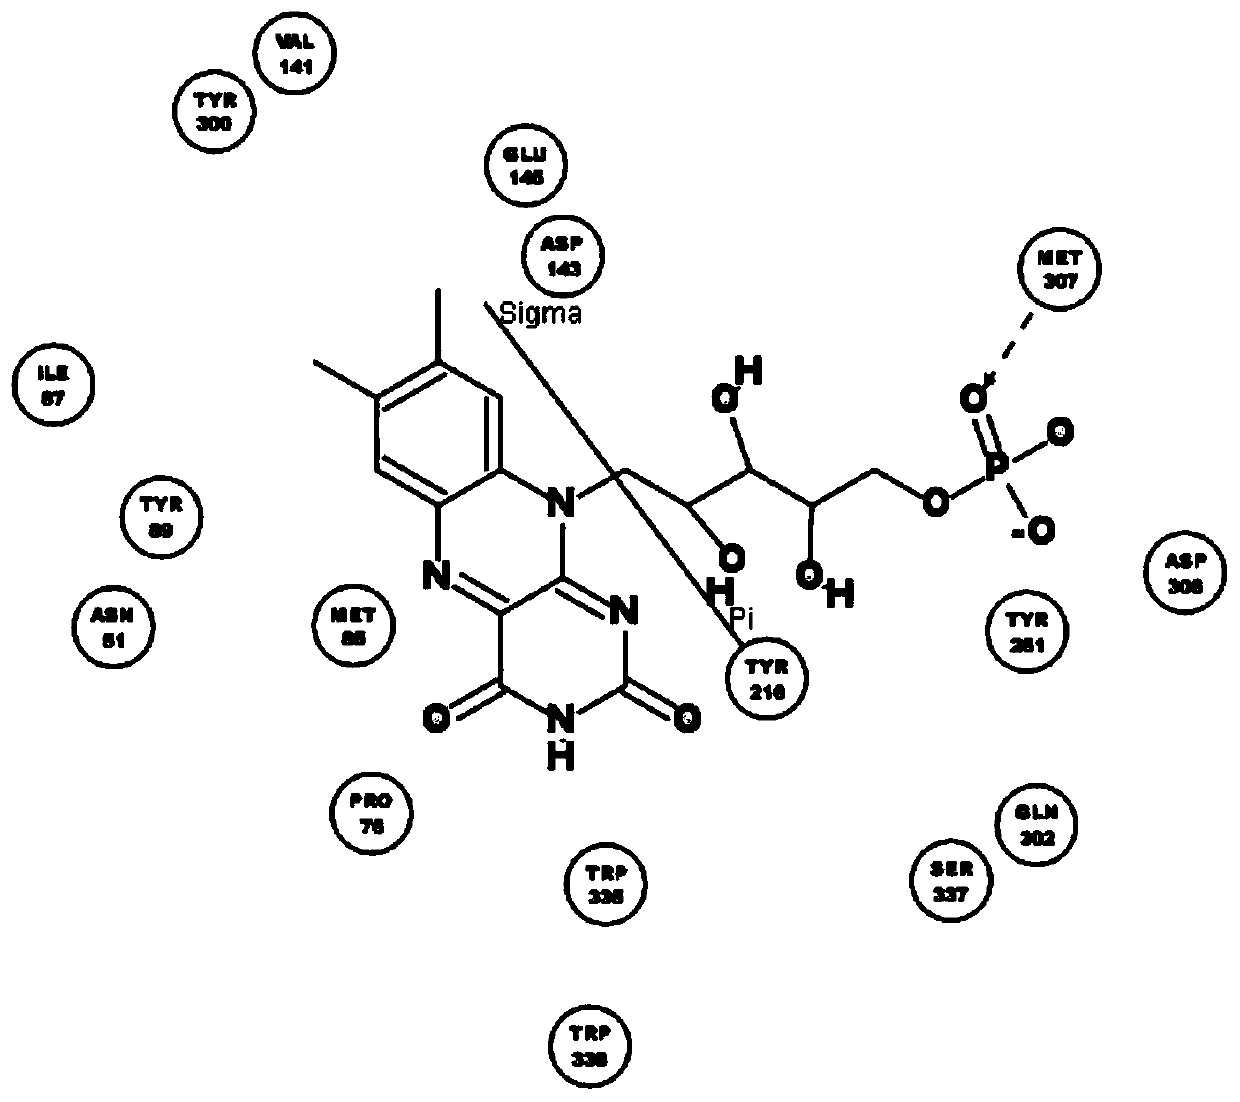 Crosslinking hyaluronic acid gel resisting hydrolysis of hyaluronidase